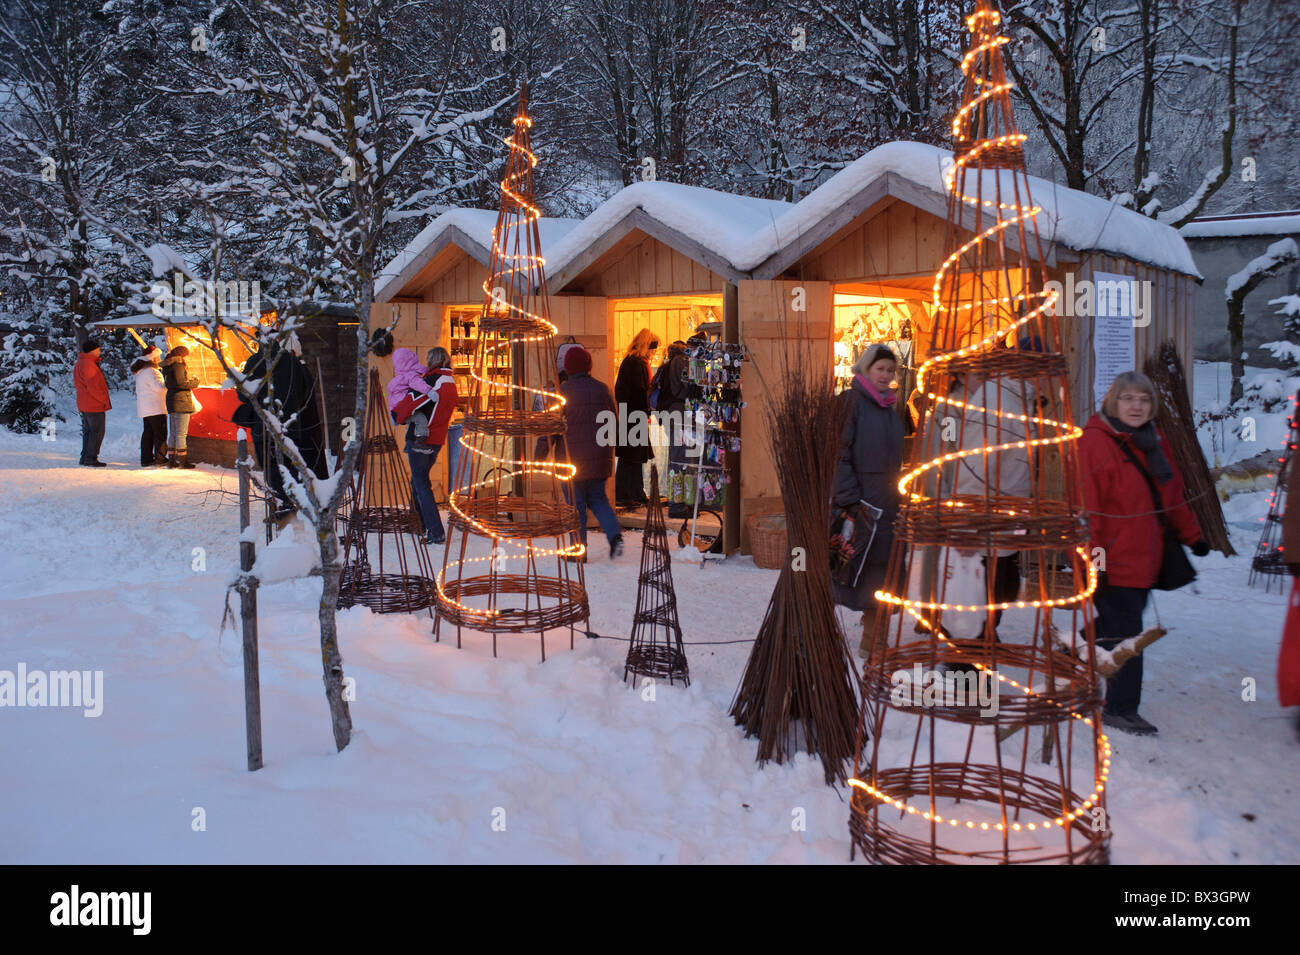 Mercatino di Natale di Ettal, Germania, con negozio per regali presenta e la decorazione a freddo la notte invernale Foto Stock